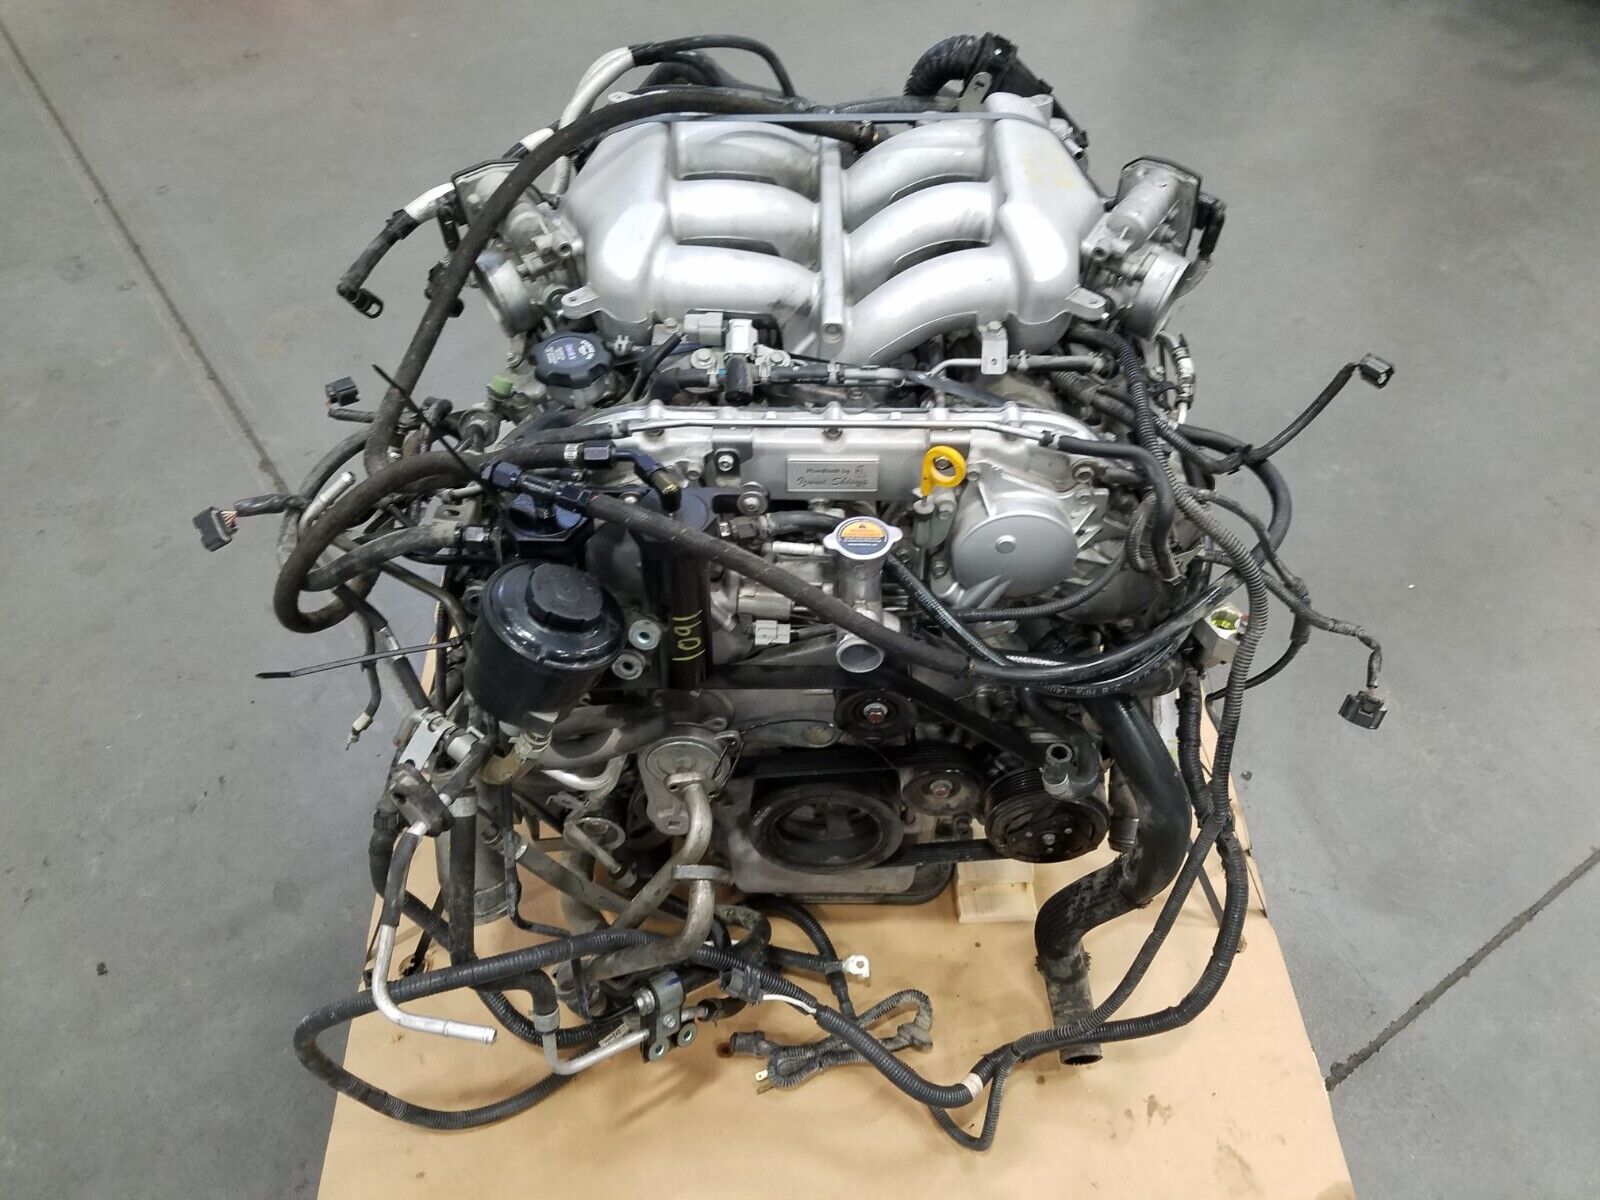 2017 Nissan GT-R GTR R35 VR38DETT 3.8L V6 TT 562hp Engine Motor 17k Mi #1091 N2